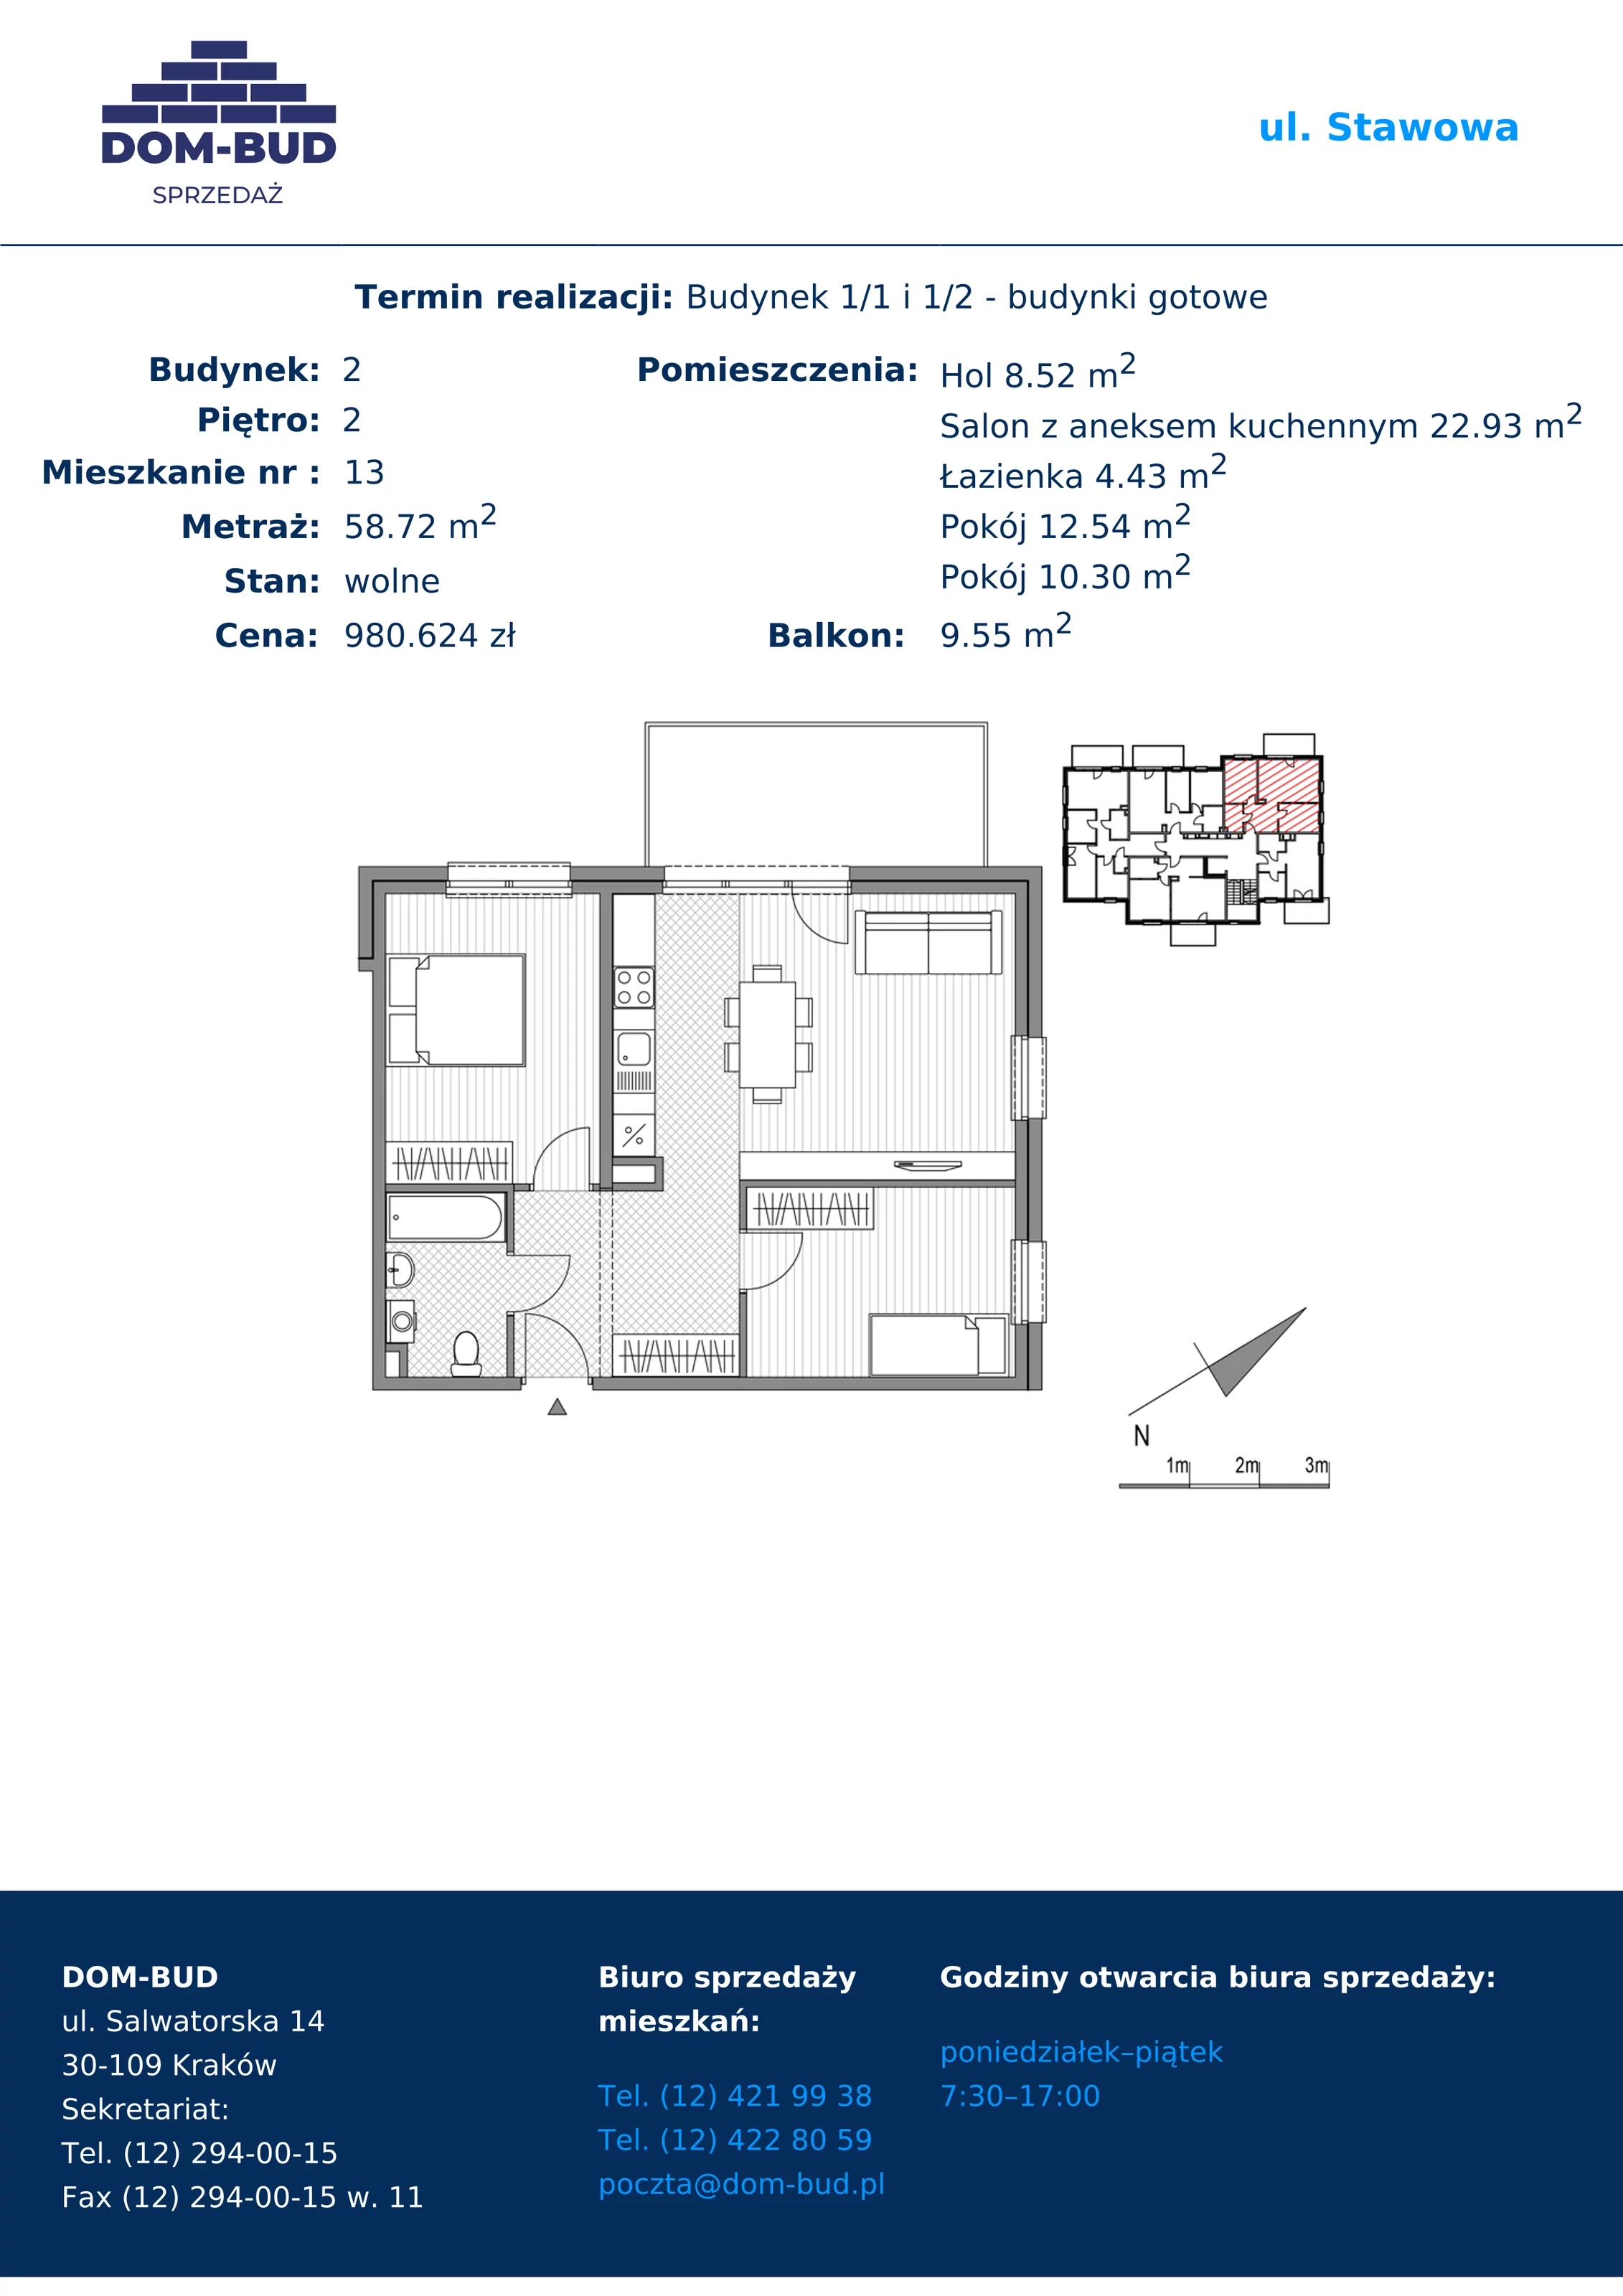 Mieszkanie 58,72 m², piętro 2, oferta nr 1/2-13, ul. Stawowa, Kraków, Prądnik Biały, Bronowice Wielkie, ul. Stawowa 242